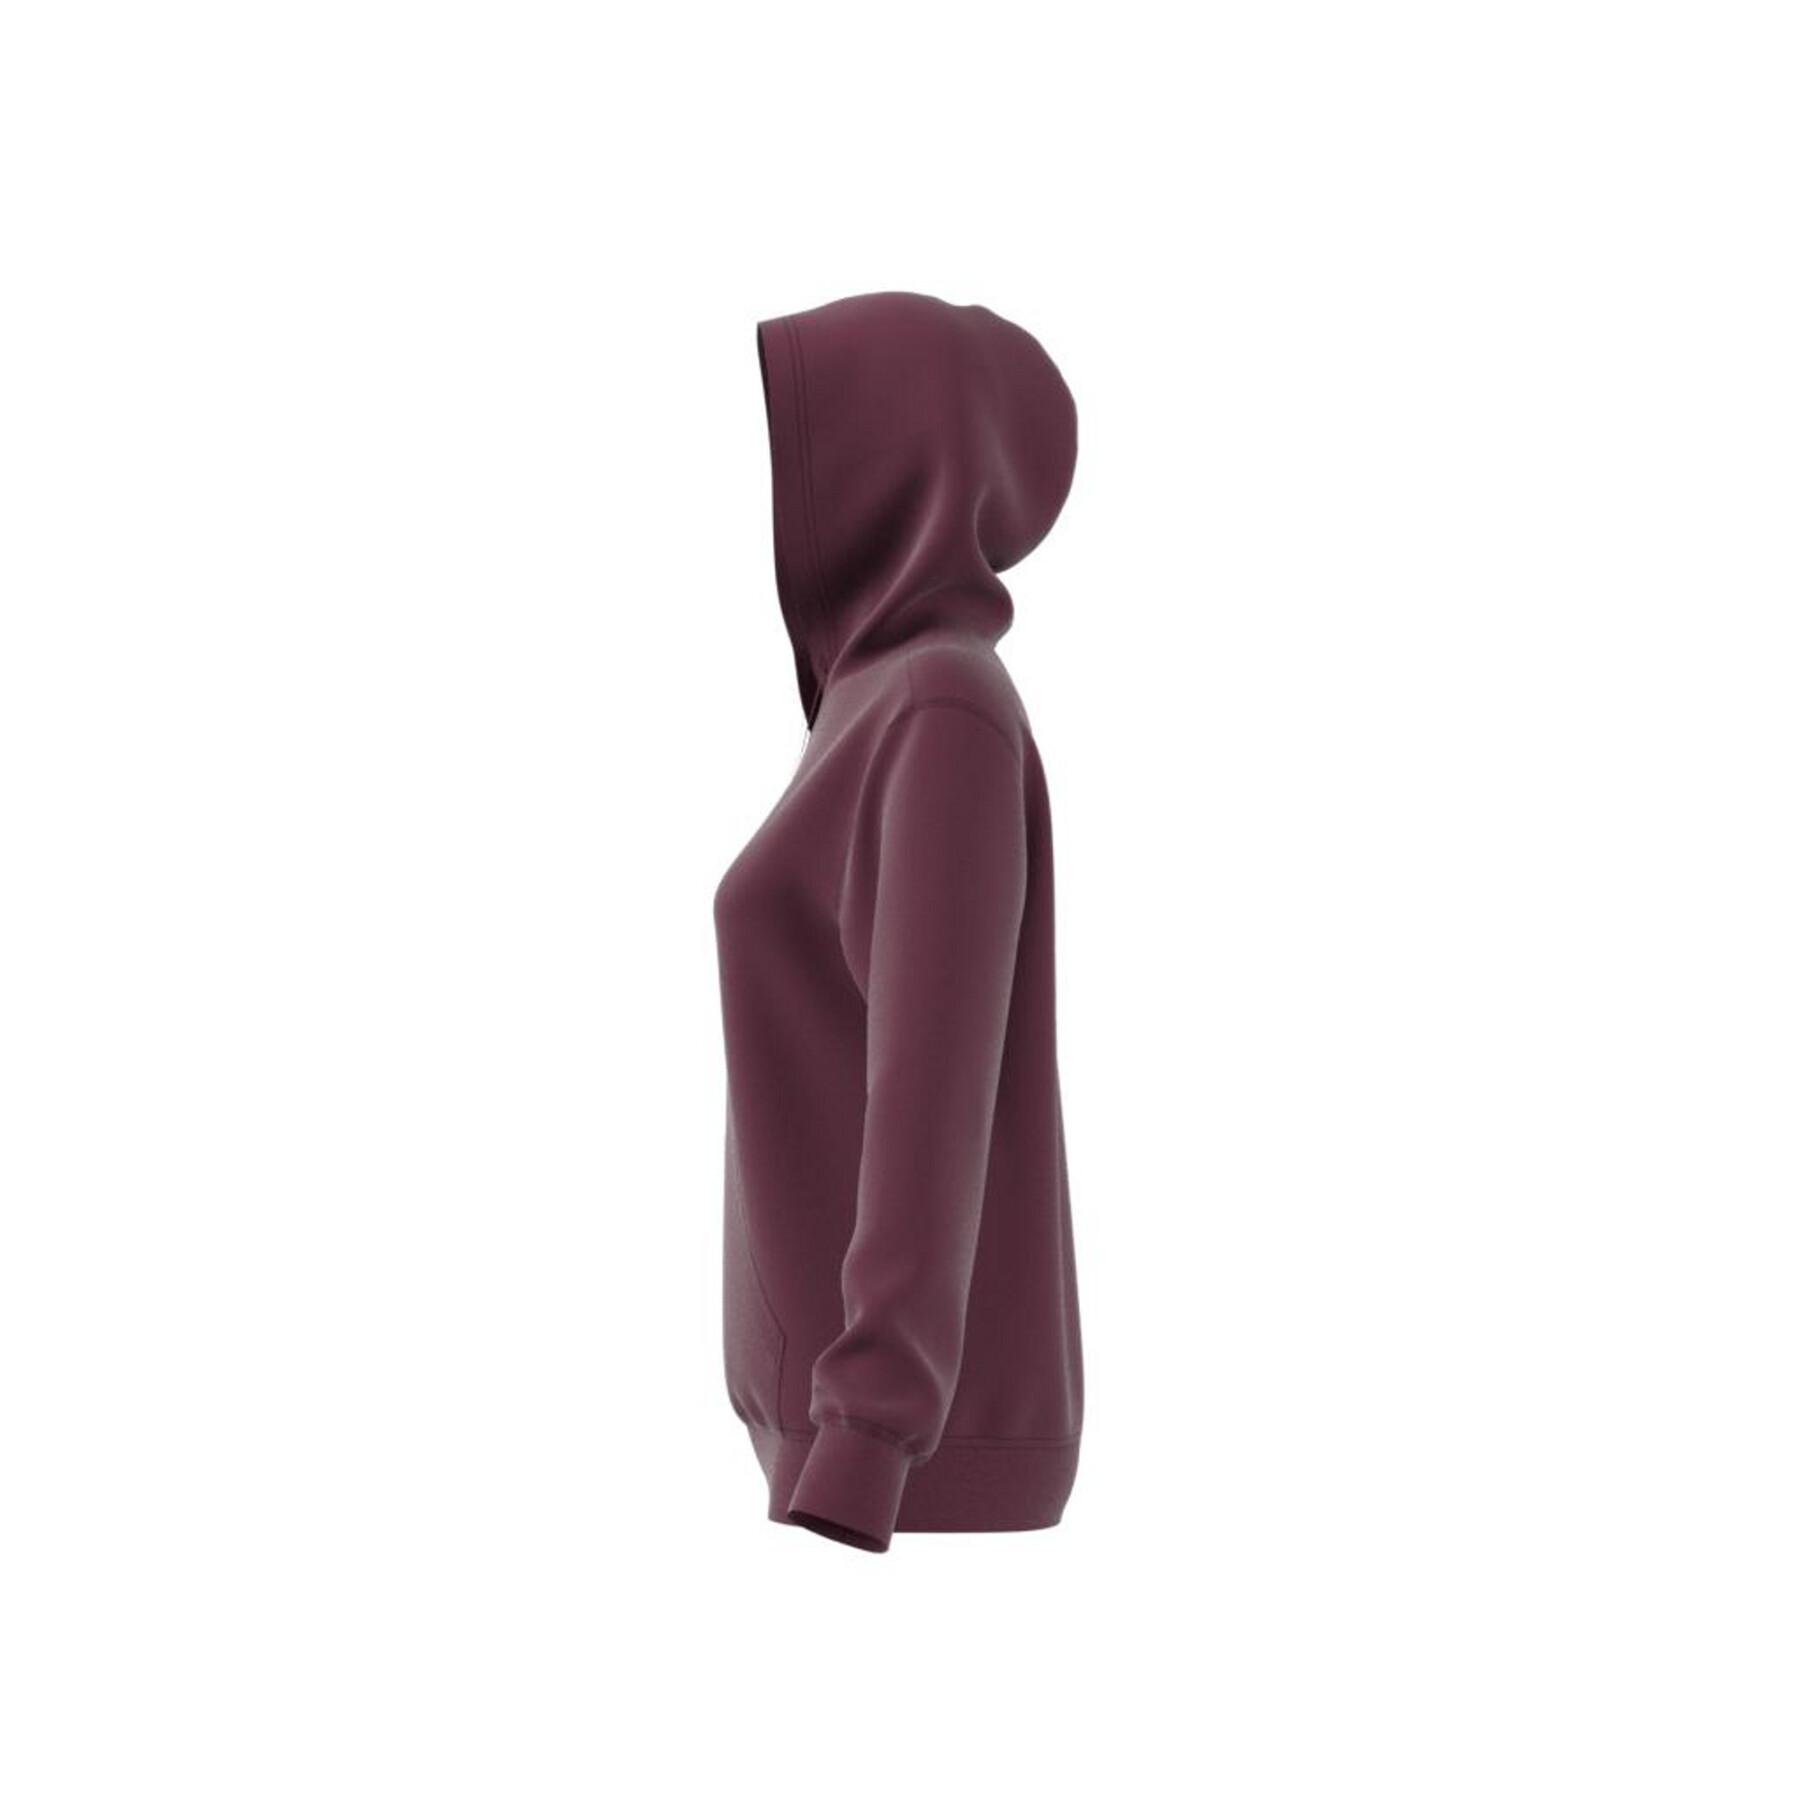 Sudadera con capucha para mujer adidas Originals Adicolor Essentials